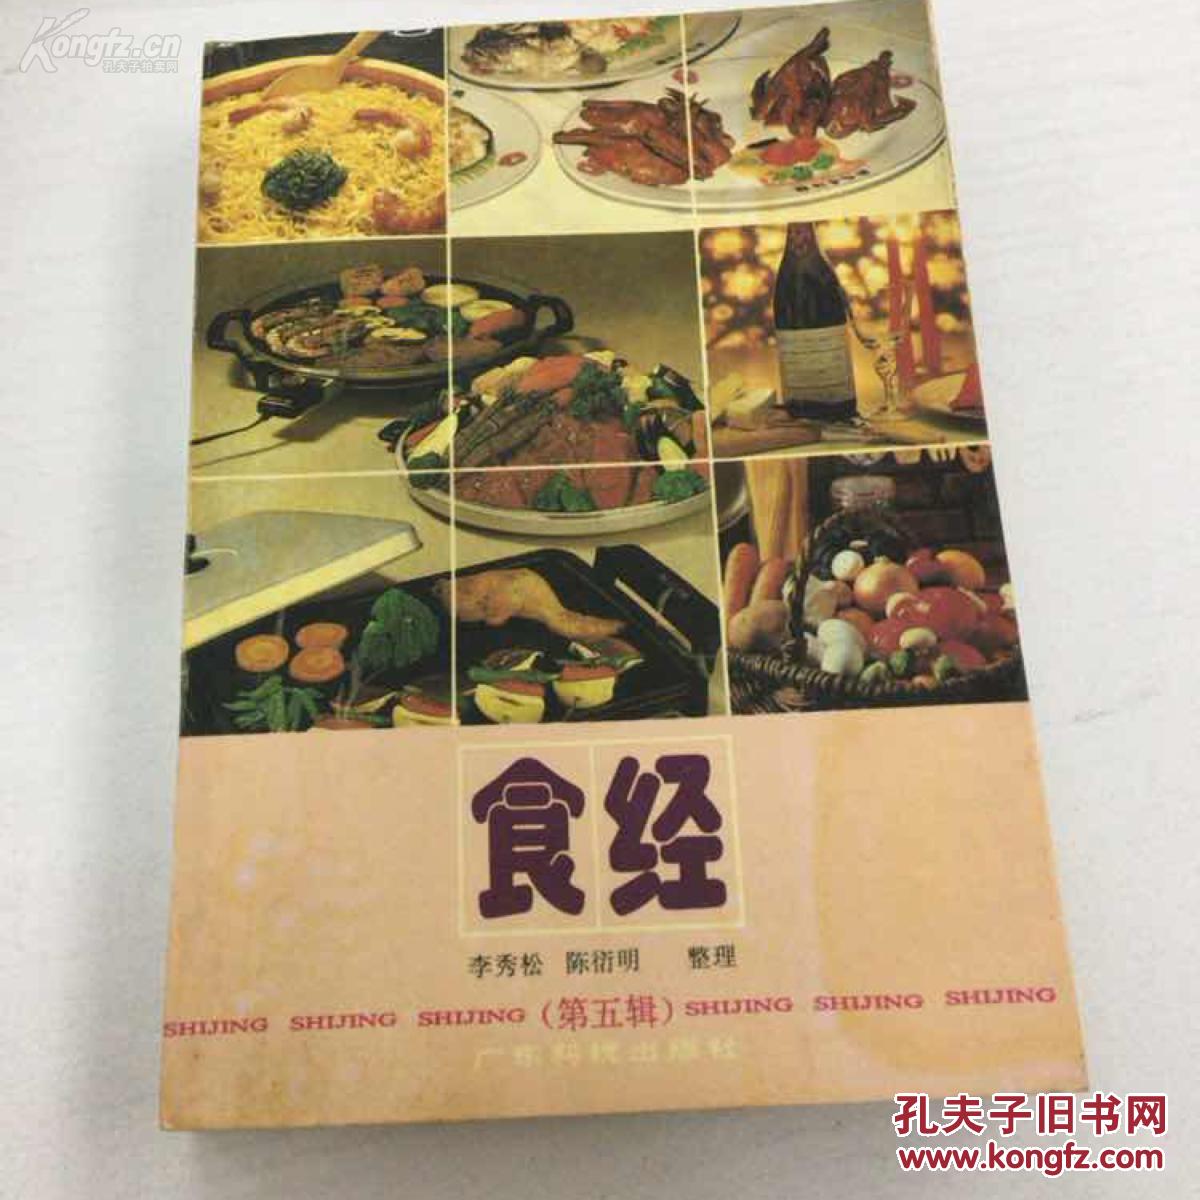 食经（第五辑）——【80年代末发表在《中国食品报等报纸有关烹饪食谱文章366篇合集】广东科技出版社1990年版[5]